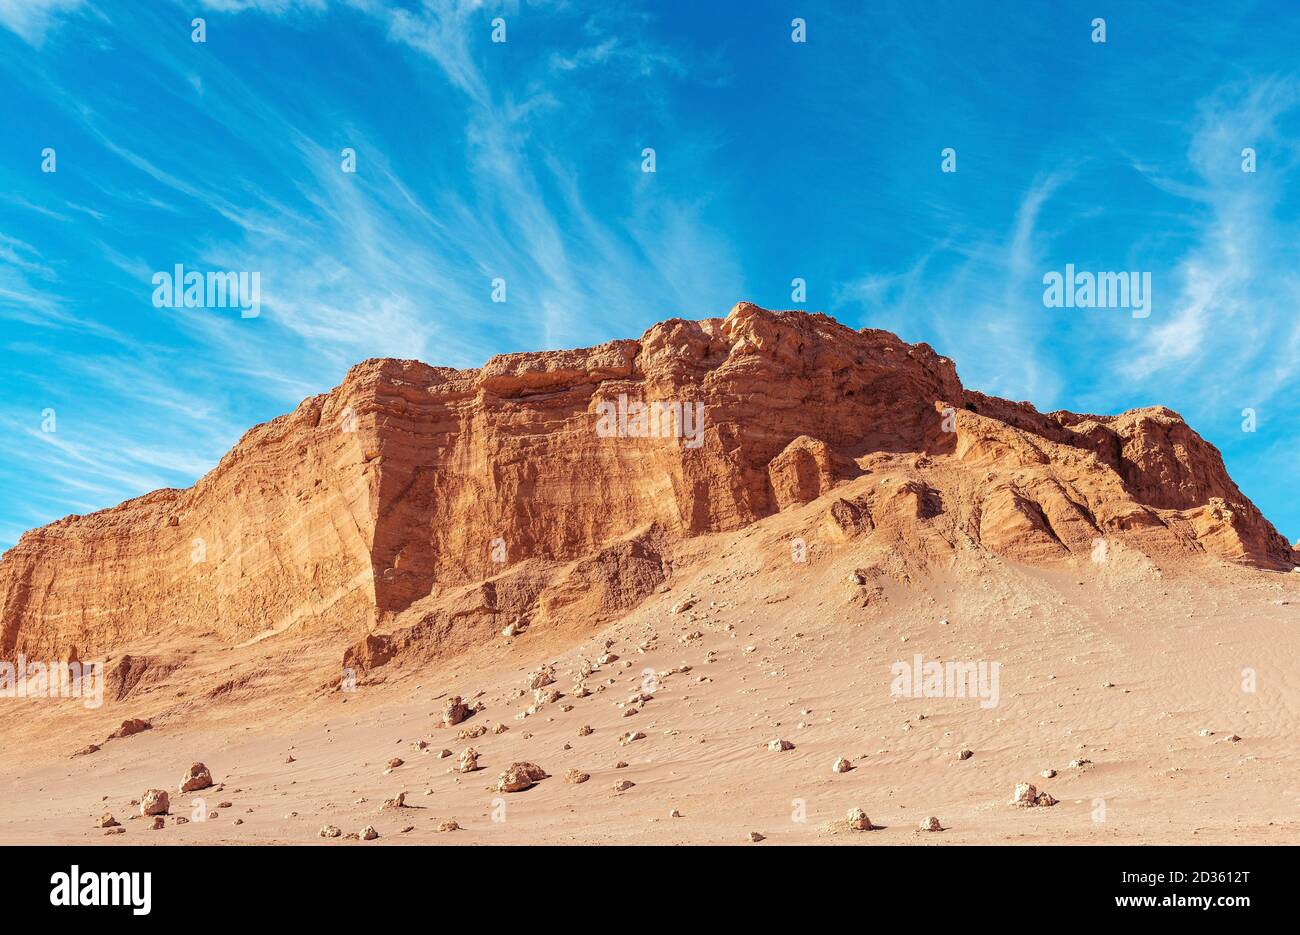 La formation rocheuse de l'amphithéâtre, vallée de la Lune, désert d'Atacama, Chili. Banque D'Images